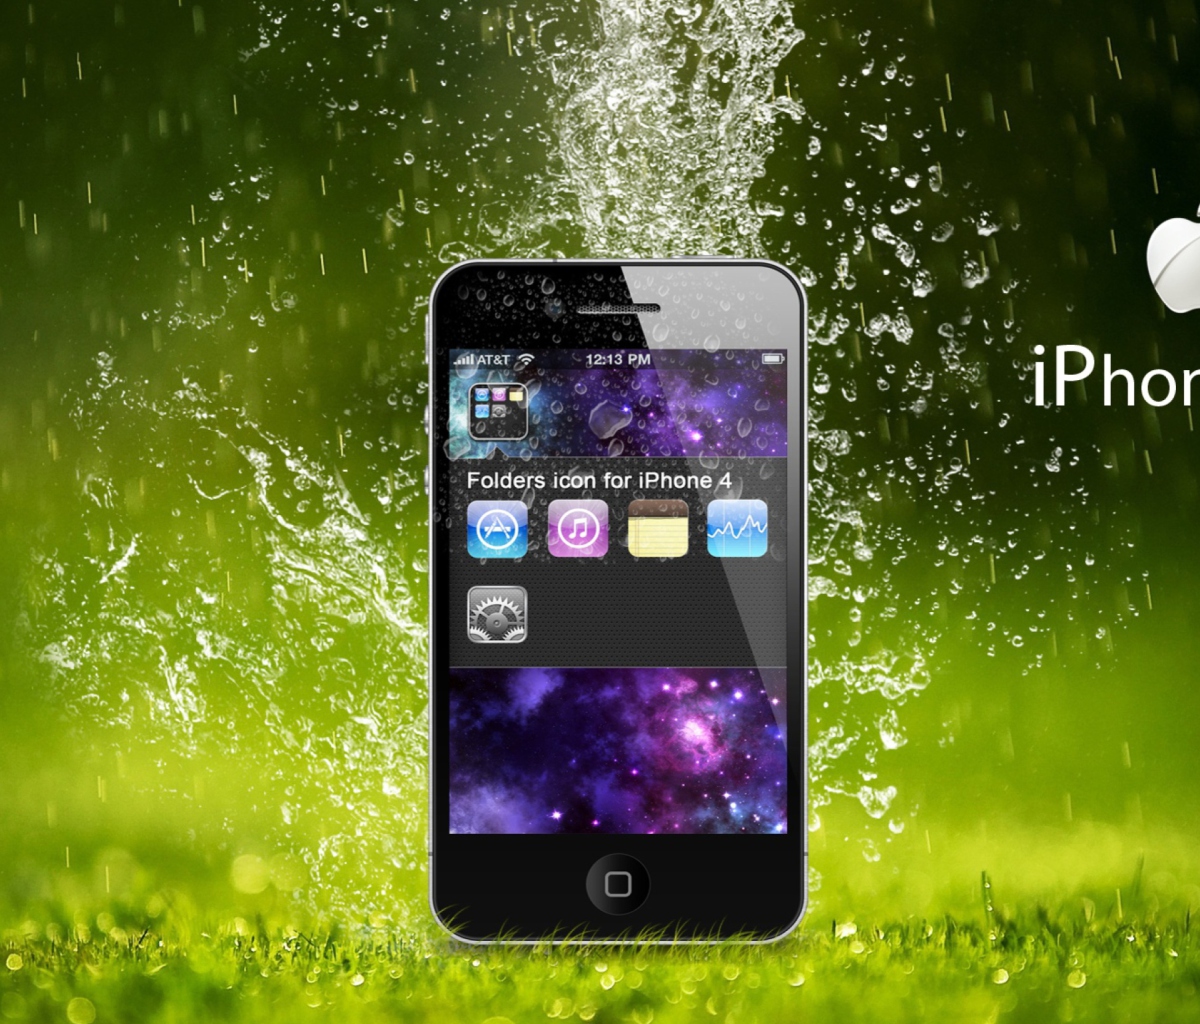 Rain Drops iPhone 4G wallpaper 1200x1024